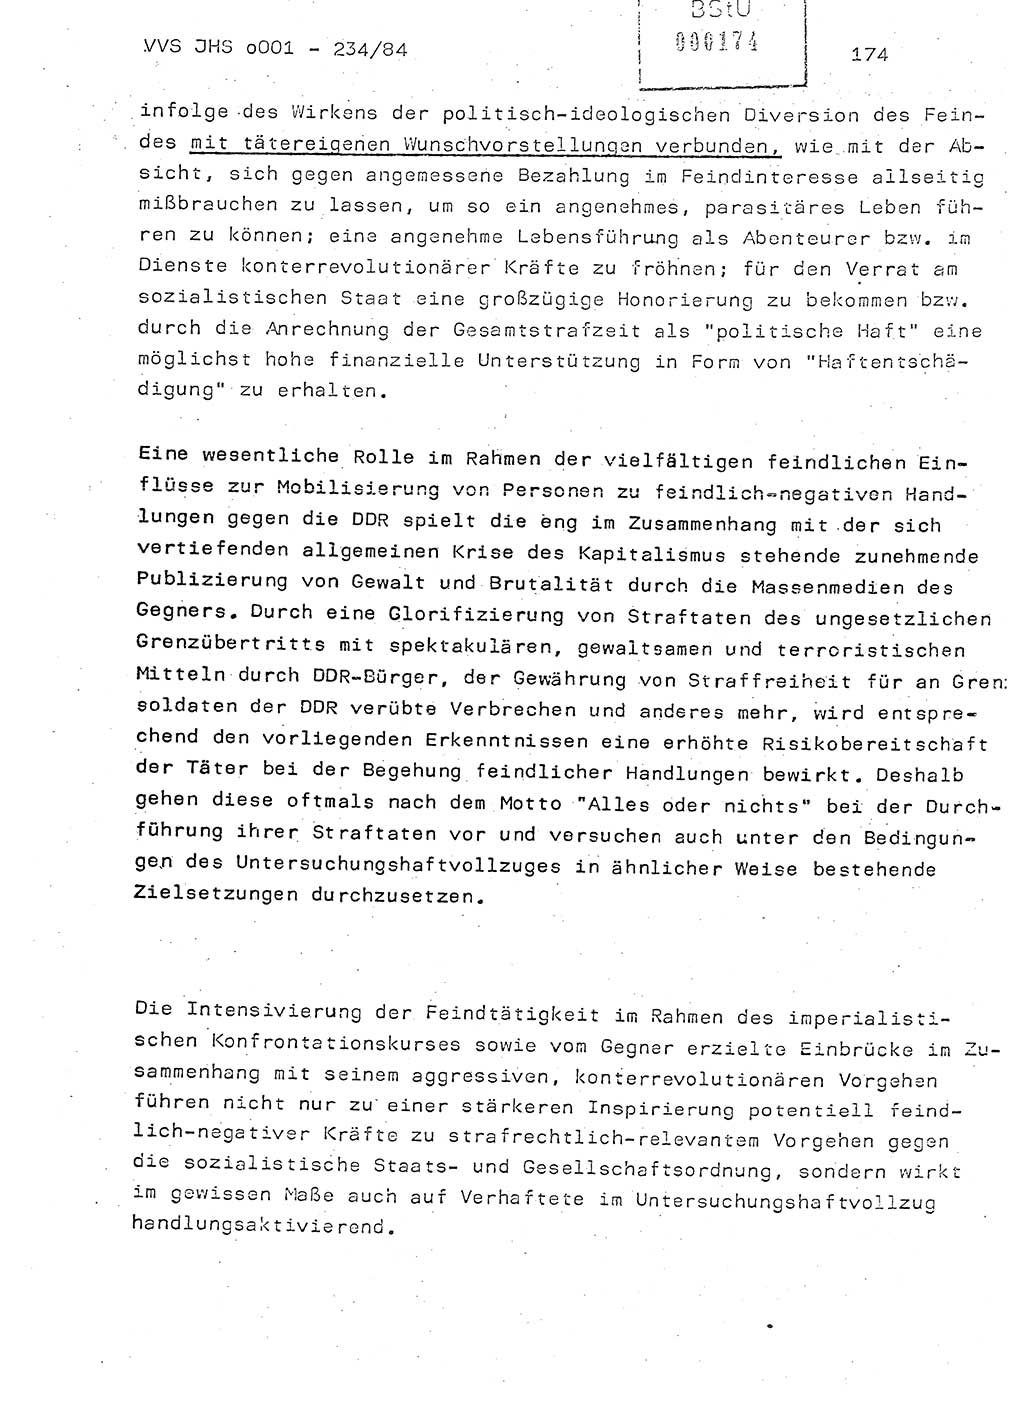 Dissertation Oberst Siegfried Rataizick (Abt. ⅩⅣ), Oberstleutnant Volkmar Heinz (Abt. ⅩⅣ), Oberstleutnant Werner Stein (HA Ⅸ), Hauptmann Heinz Conrad (JHS), Ministerium für Staatssicherheit (MfS) [Deutsche Demokratische Republik (DDR)], Juristische Hochschule (JHS), Vertrauliche Verschlußsache (VVS) o001-234/84, Potsdam 1984, Seite 174 (Diss. MfS DDR JHS VVS o001-234/84 1984, S. 174)